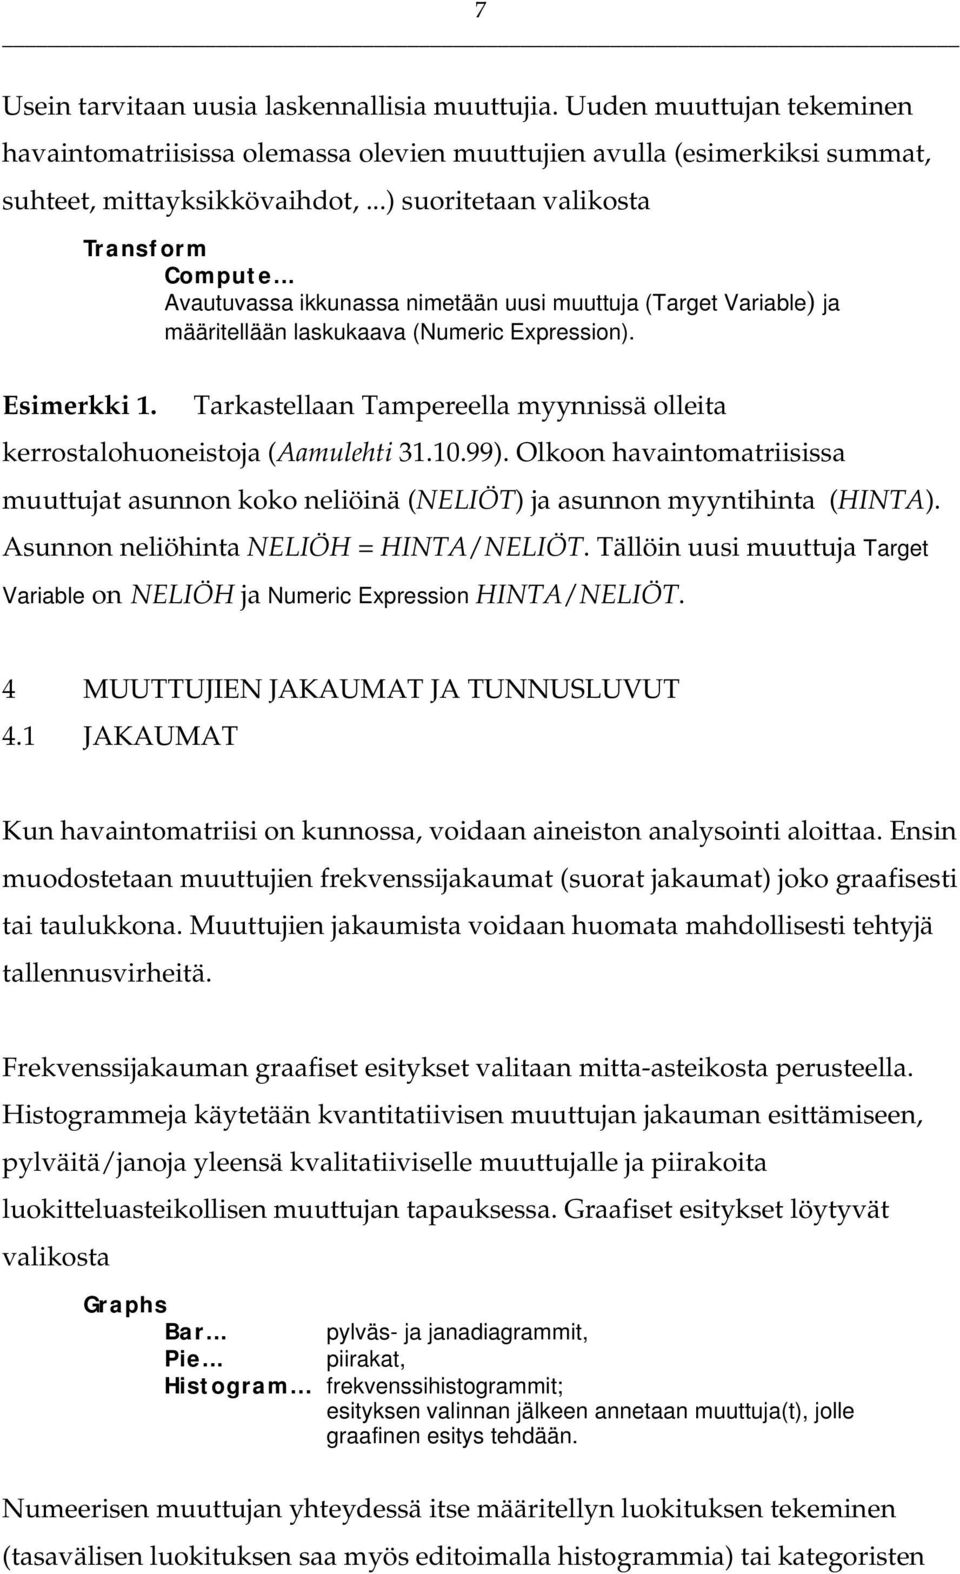 Tarkastellaan Tampereella myynnissä olleita kerrostalohuoneistoja (Aamulehti 31.10.99). Olkoon havaintomatriisissa muuttujat asunnon koko neliöinä (NELIÖT) ja asunnon myyntihinta (HINTA).